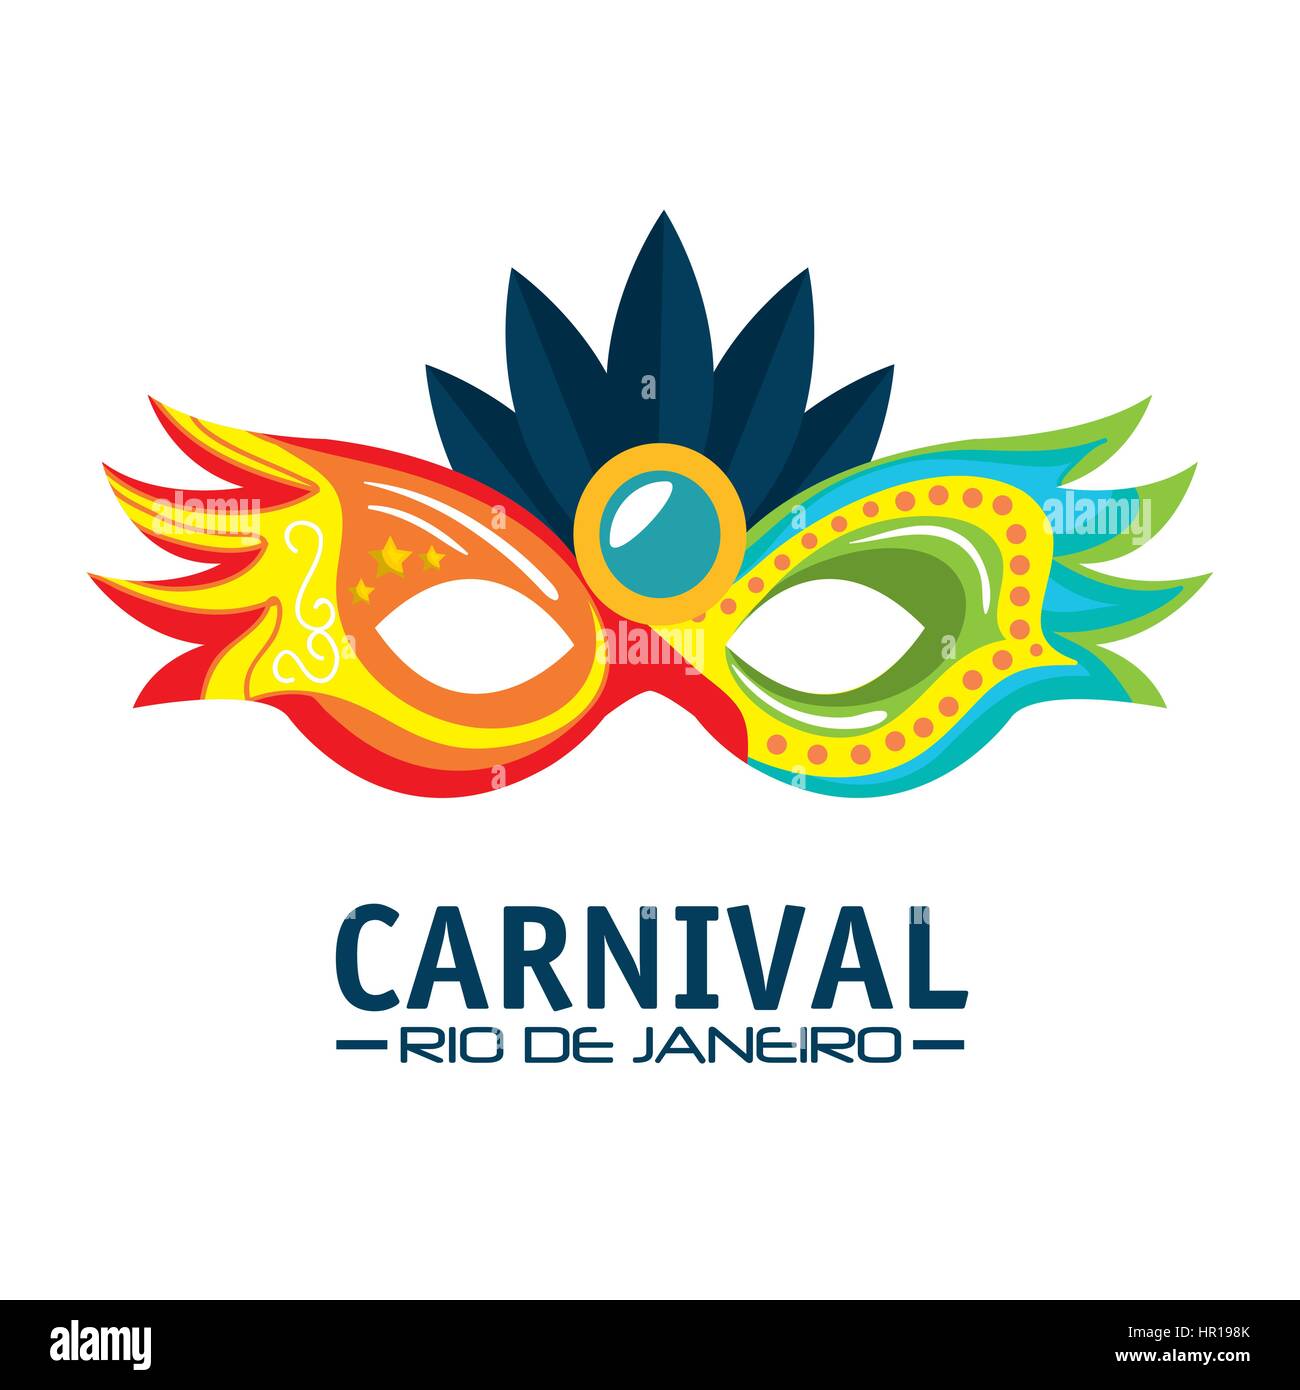 mask carnival rio de janeiro party Stock Vector Image & Art - Alamy